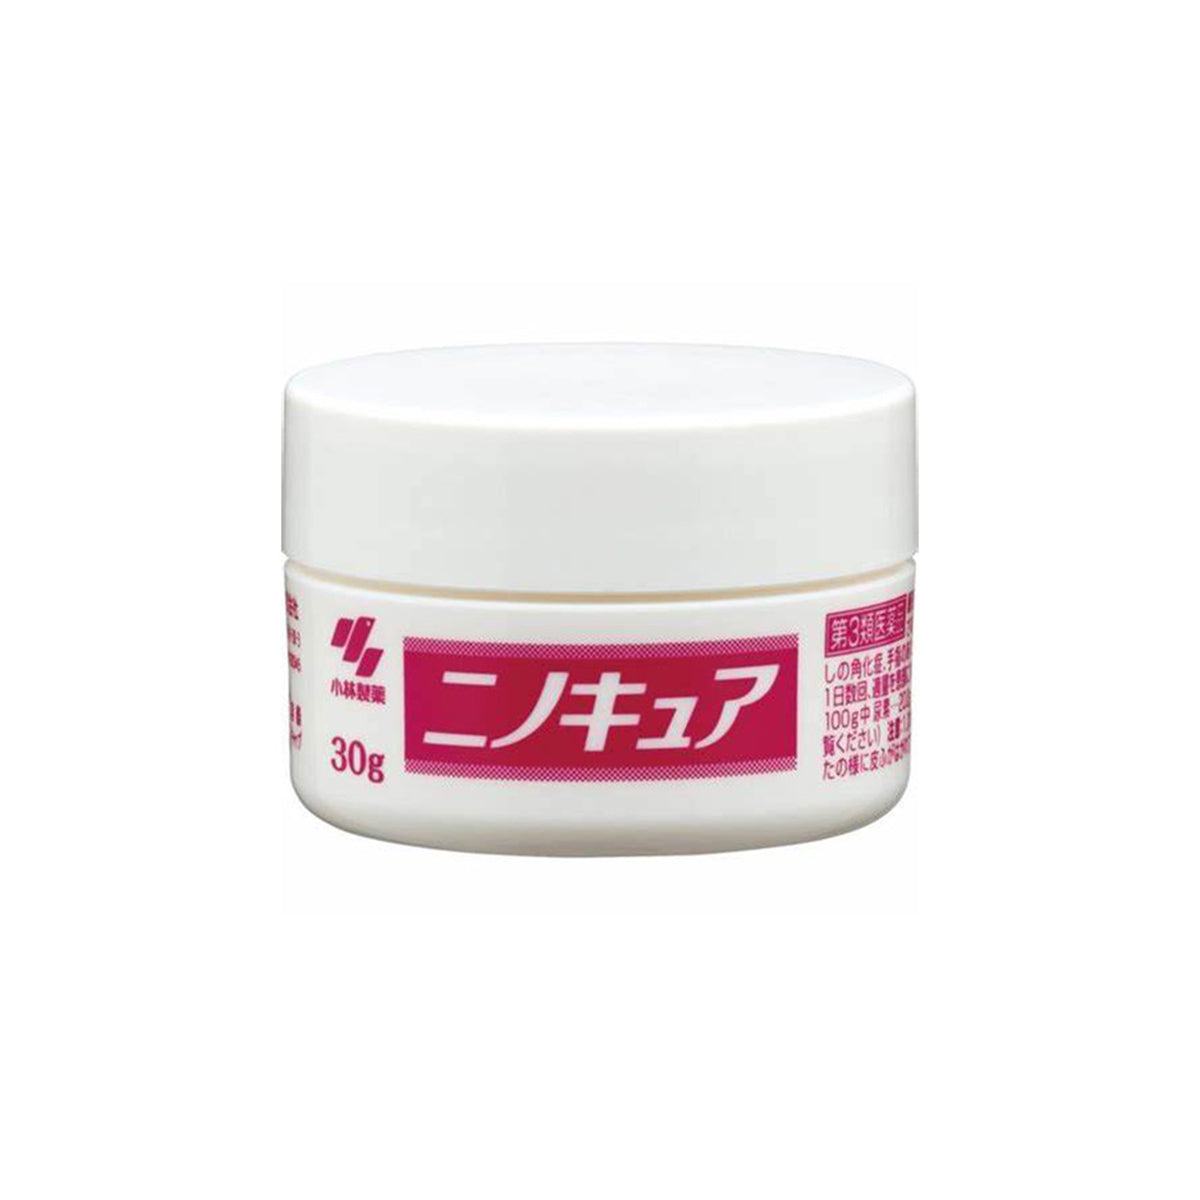 Skin Care Cream For Keratosis Pilaris 30g